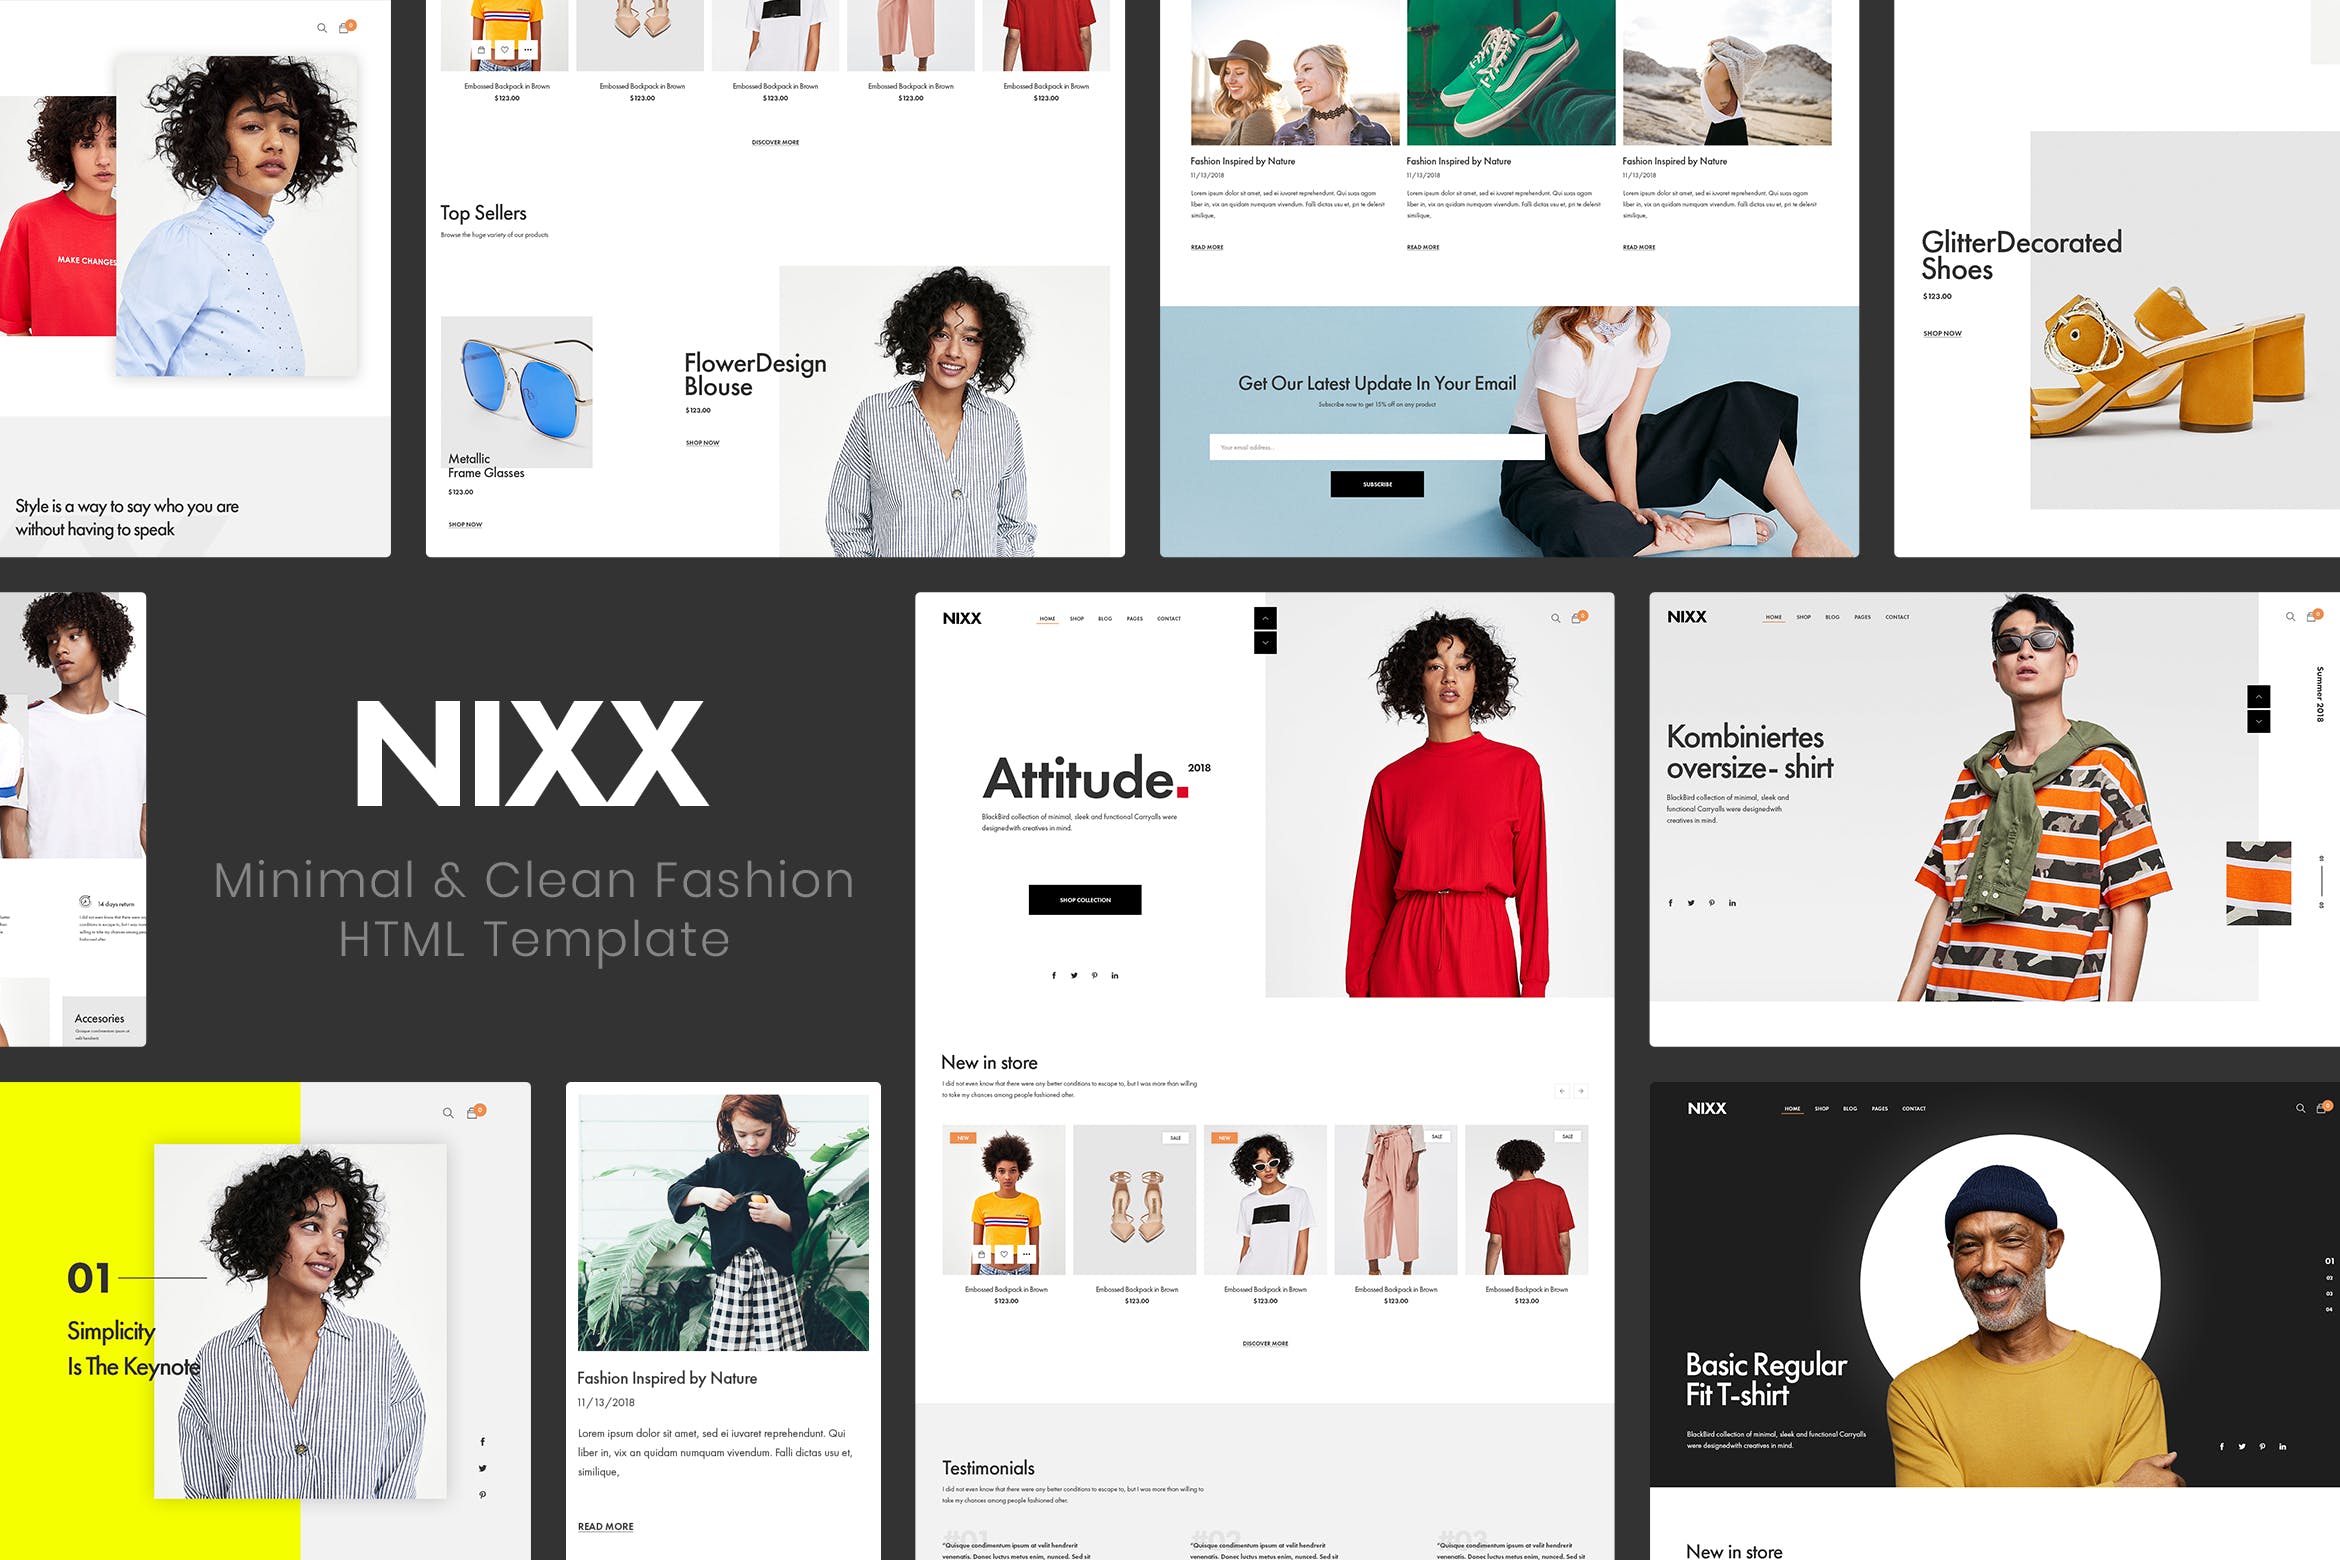 极简主义时尚主题网站HTML网上商城模板素材库精选 NIXX | Minimal & Clean Fashion HTML Template插图